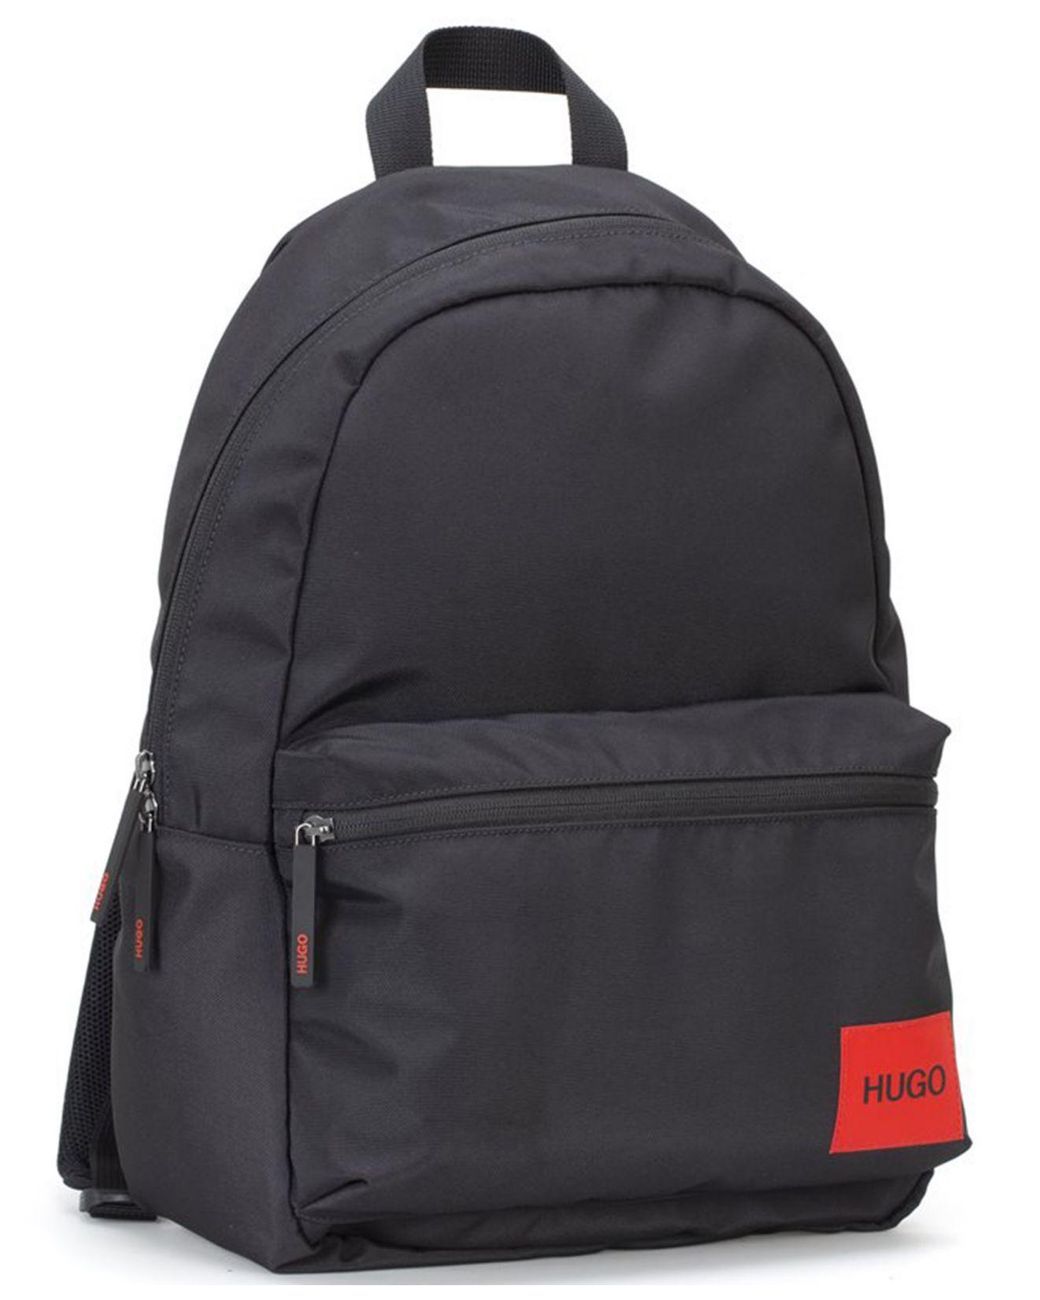 BOSS by HUGO BOSS Synthetic Ethon Responsible Nylon Backpack in Black for  Men - Lyst